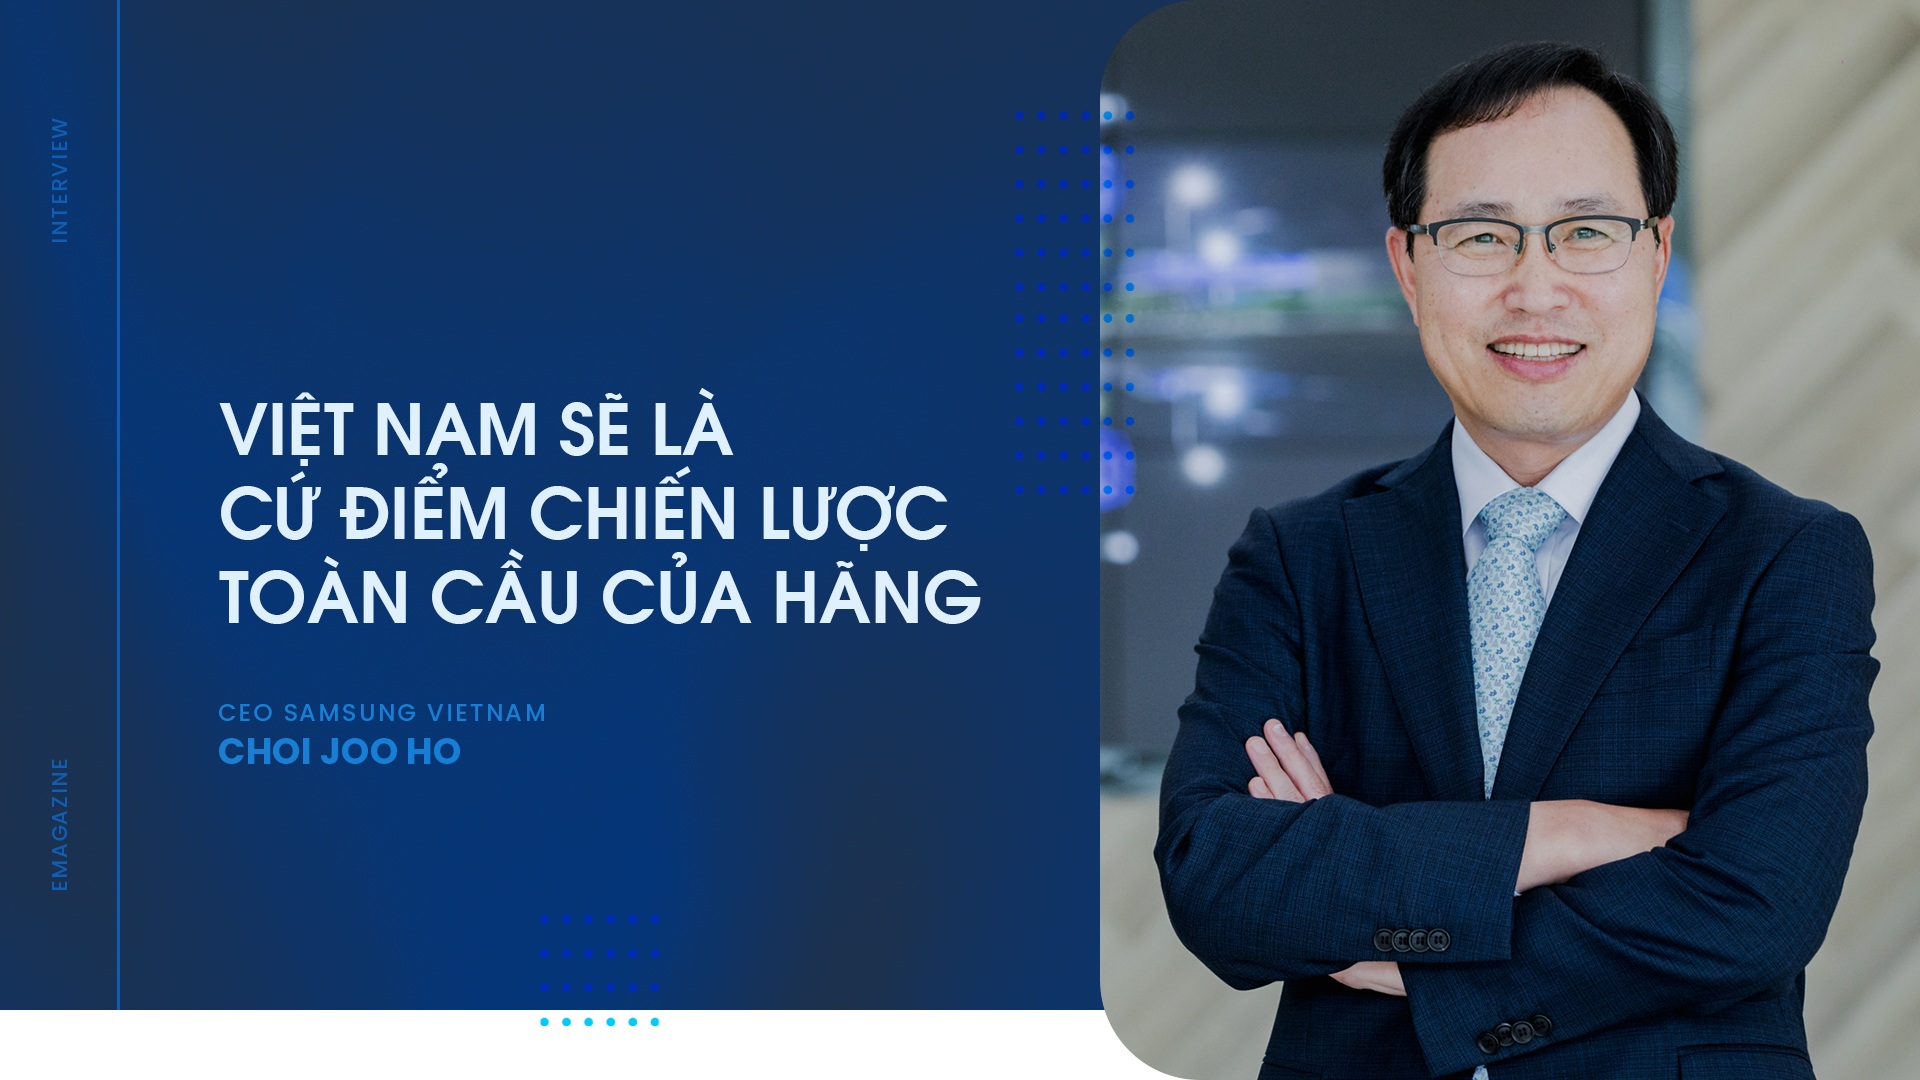 CEO Samsung Việt Nam hé lộ về dự án 220 triệu USD và lời hứa cứ điểm